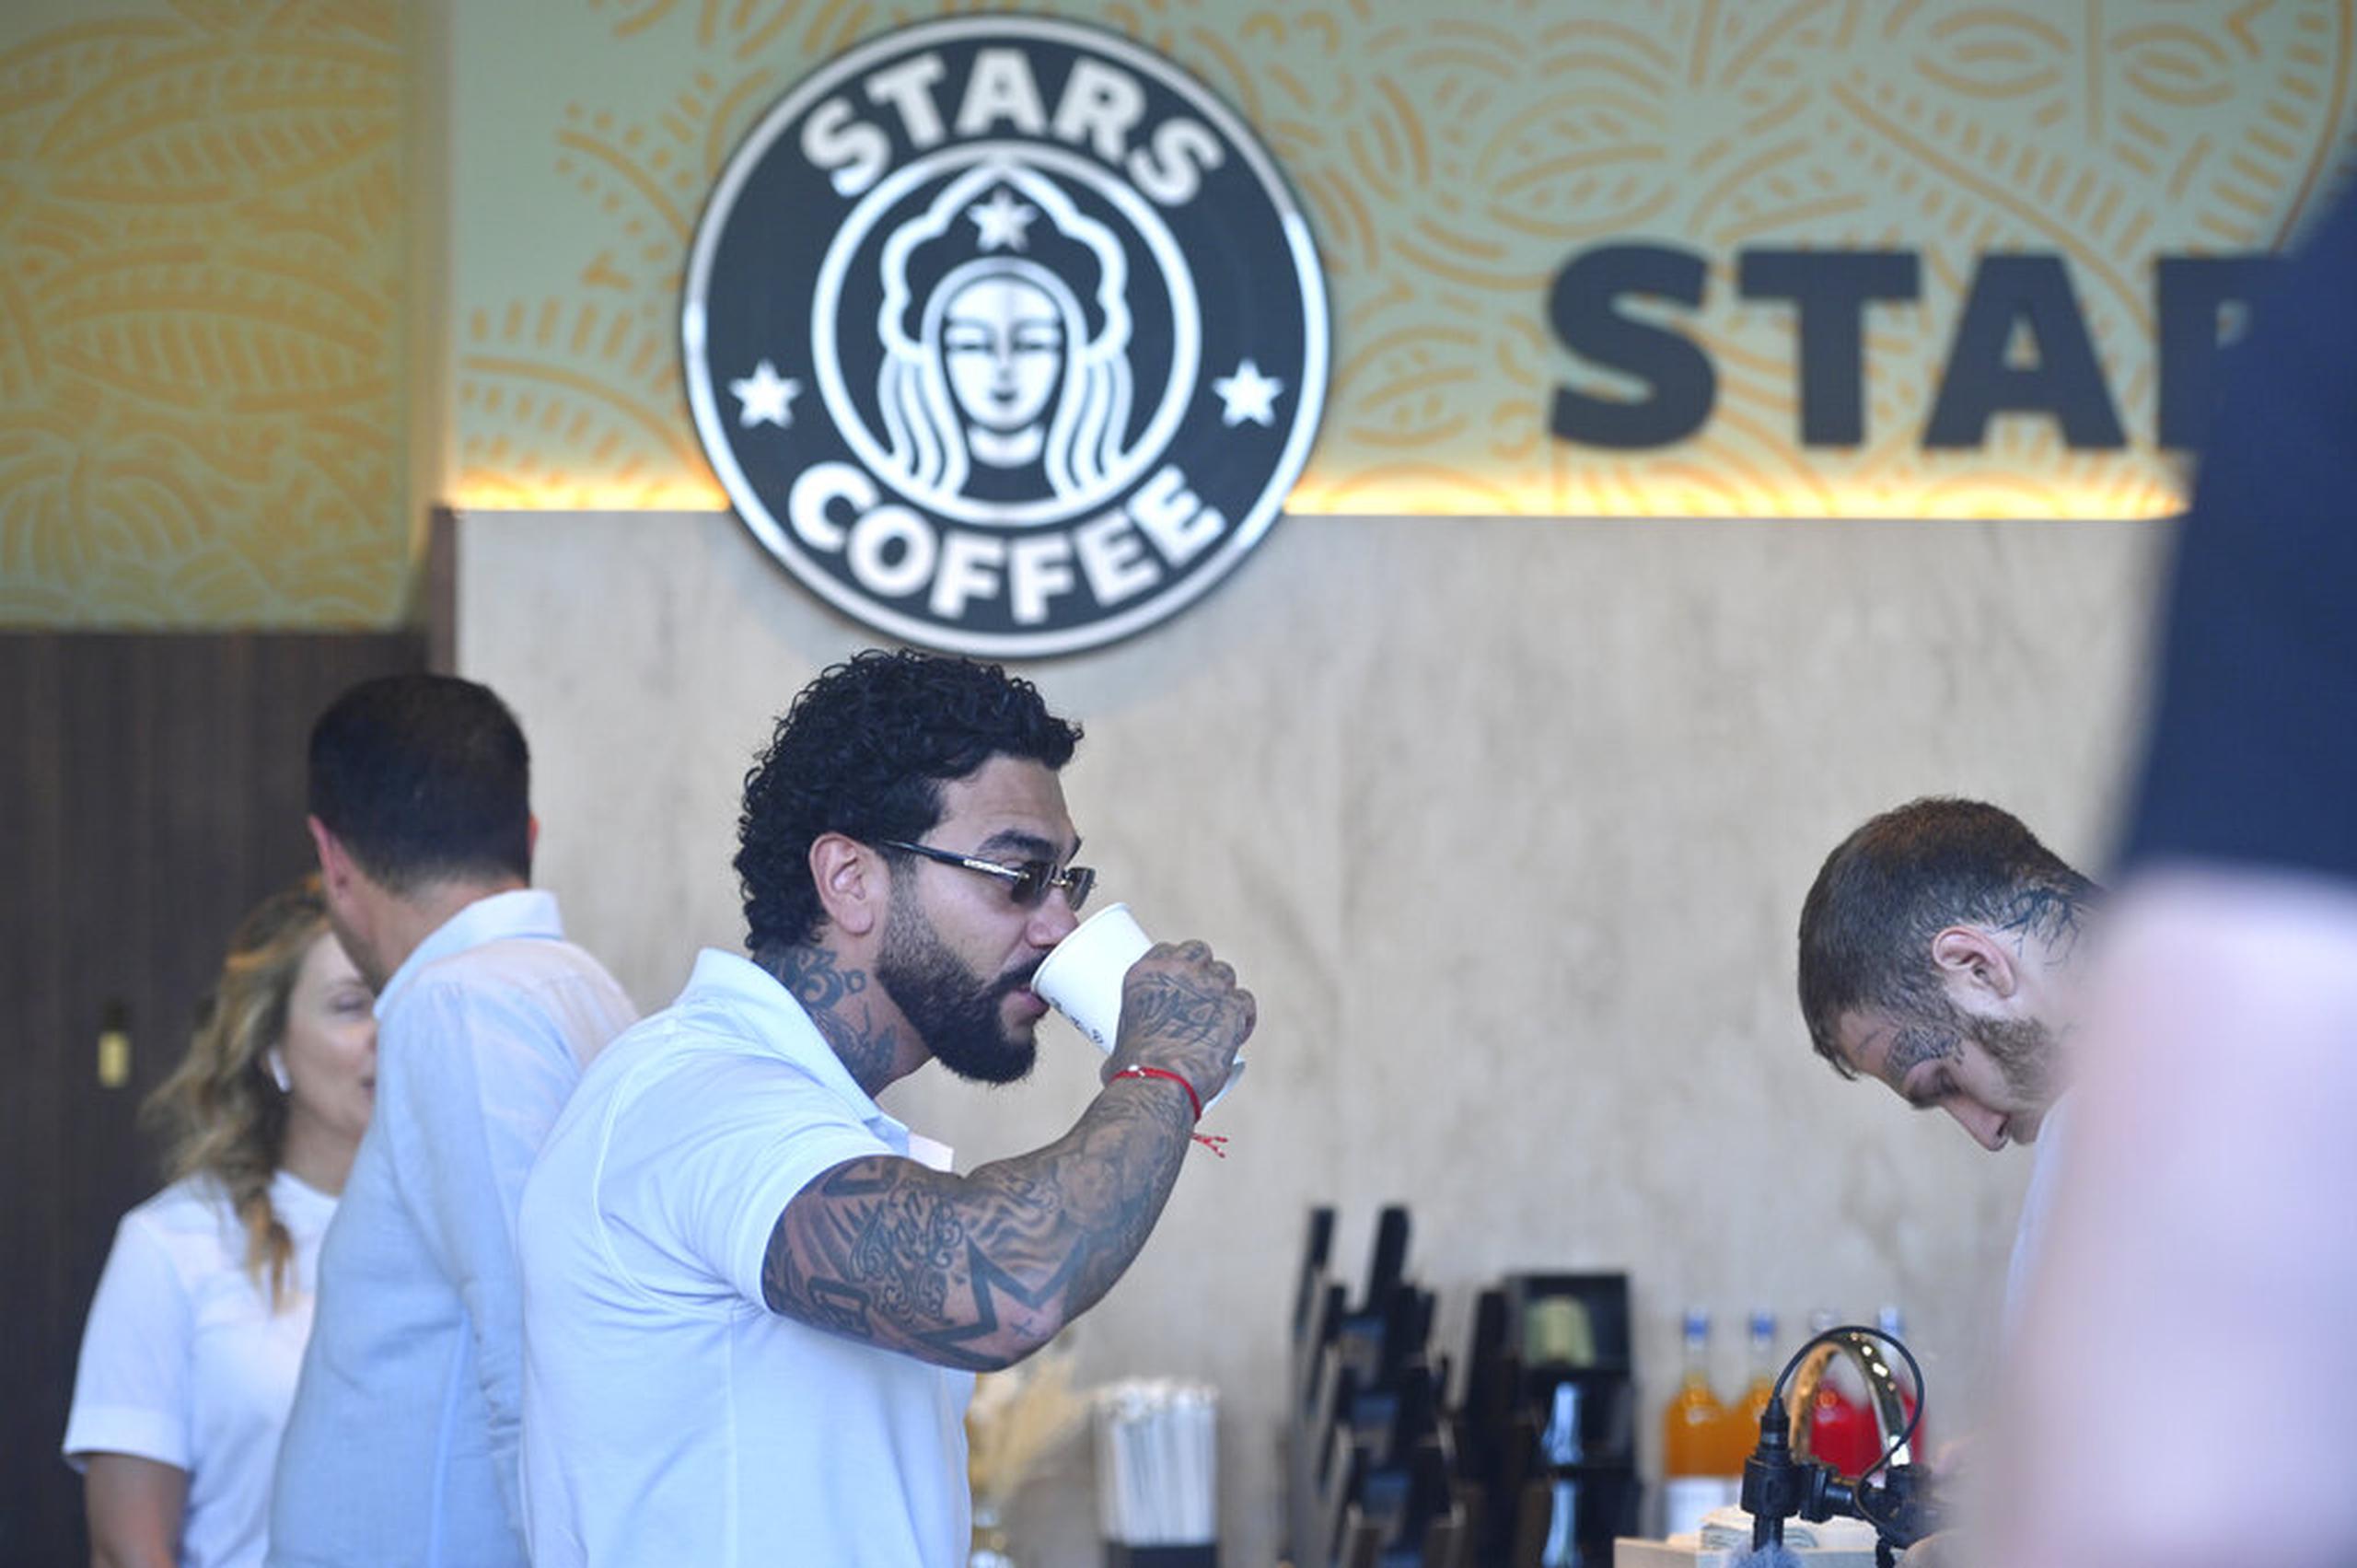 El cantante y empresario ruso Timur Yunusov, mejor conocido como Timati, toma café en la cafetería Stars Coffee recién inaugurada en Moscú el 18 de agosto de 2022.